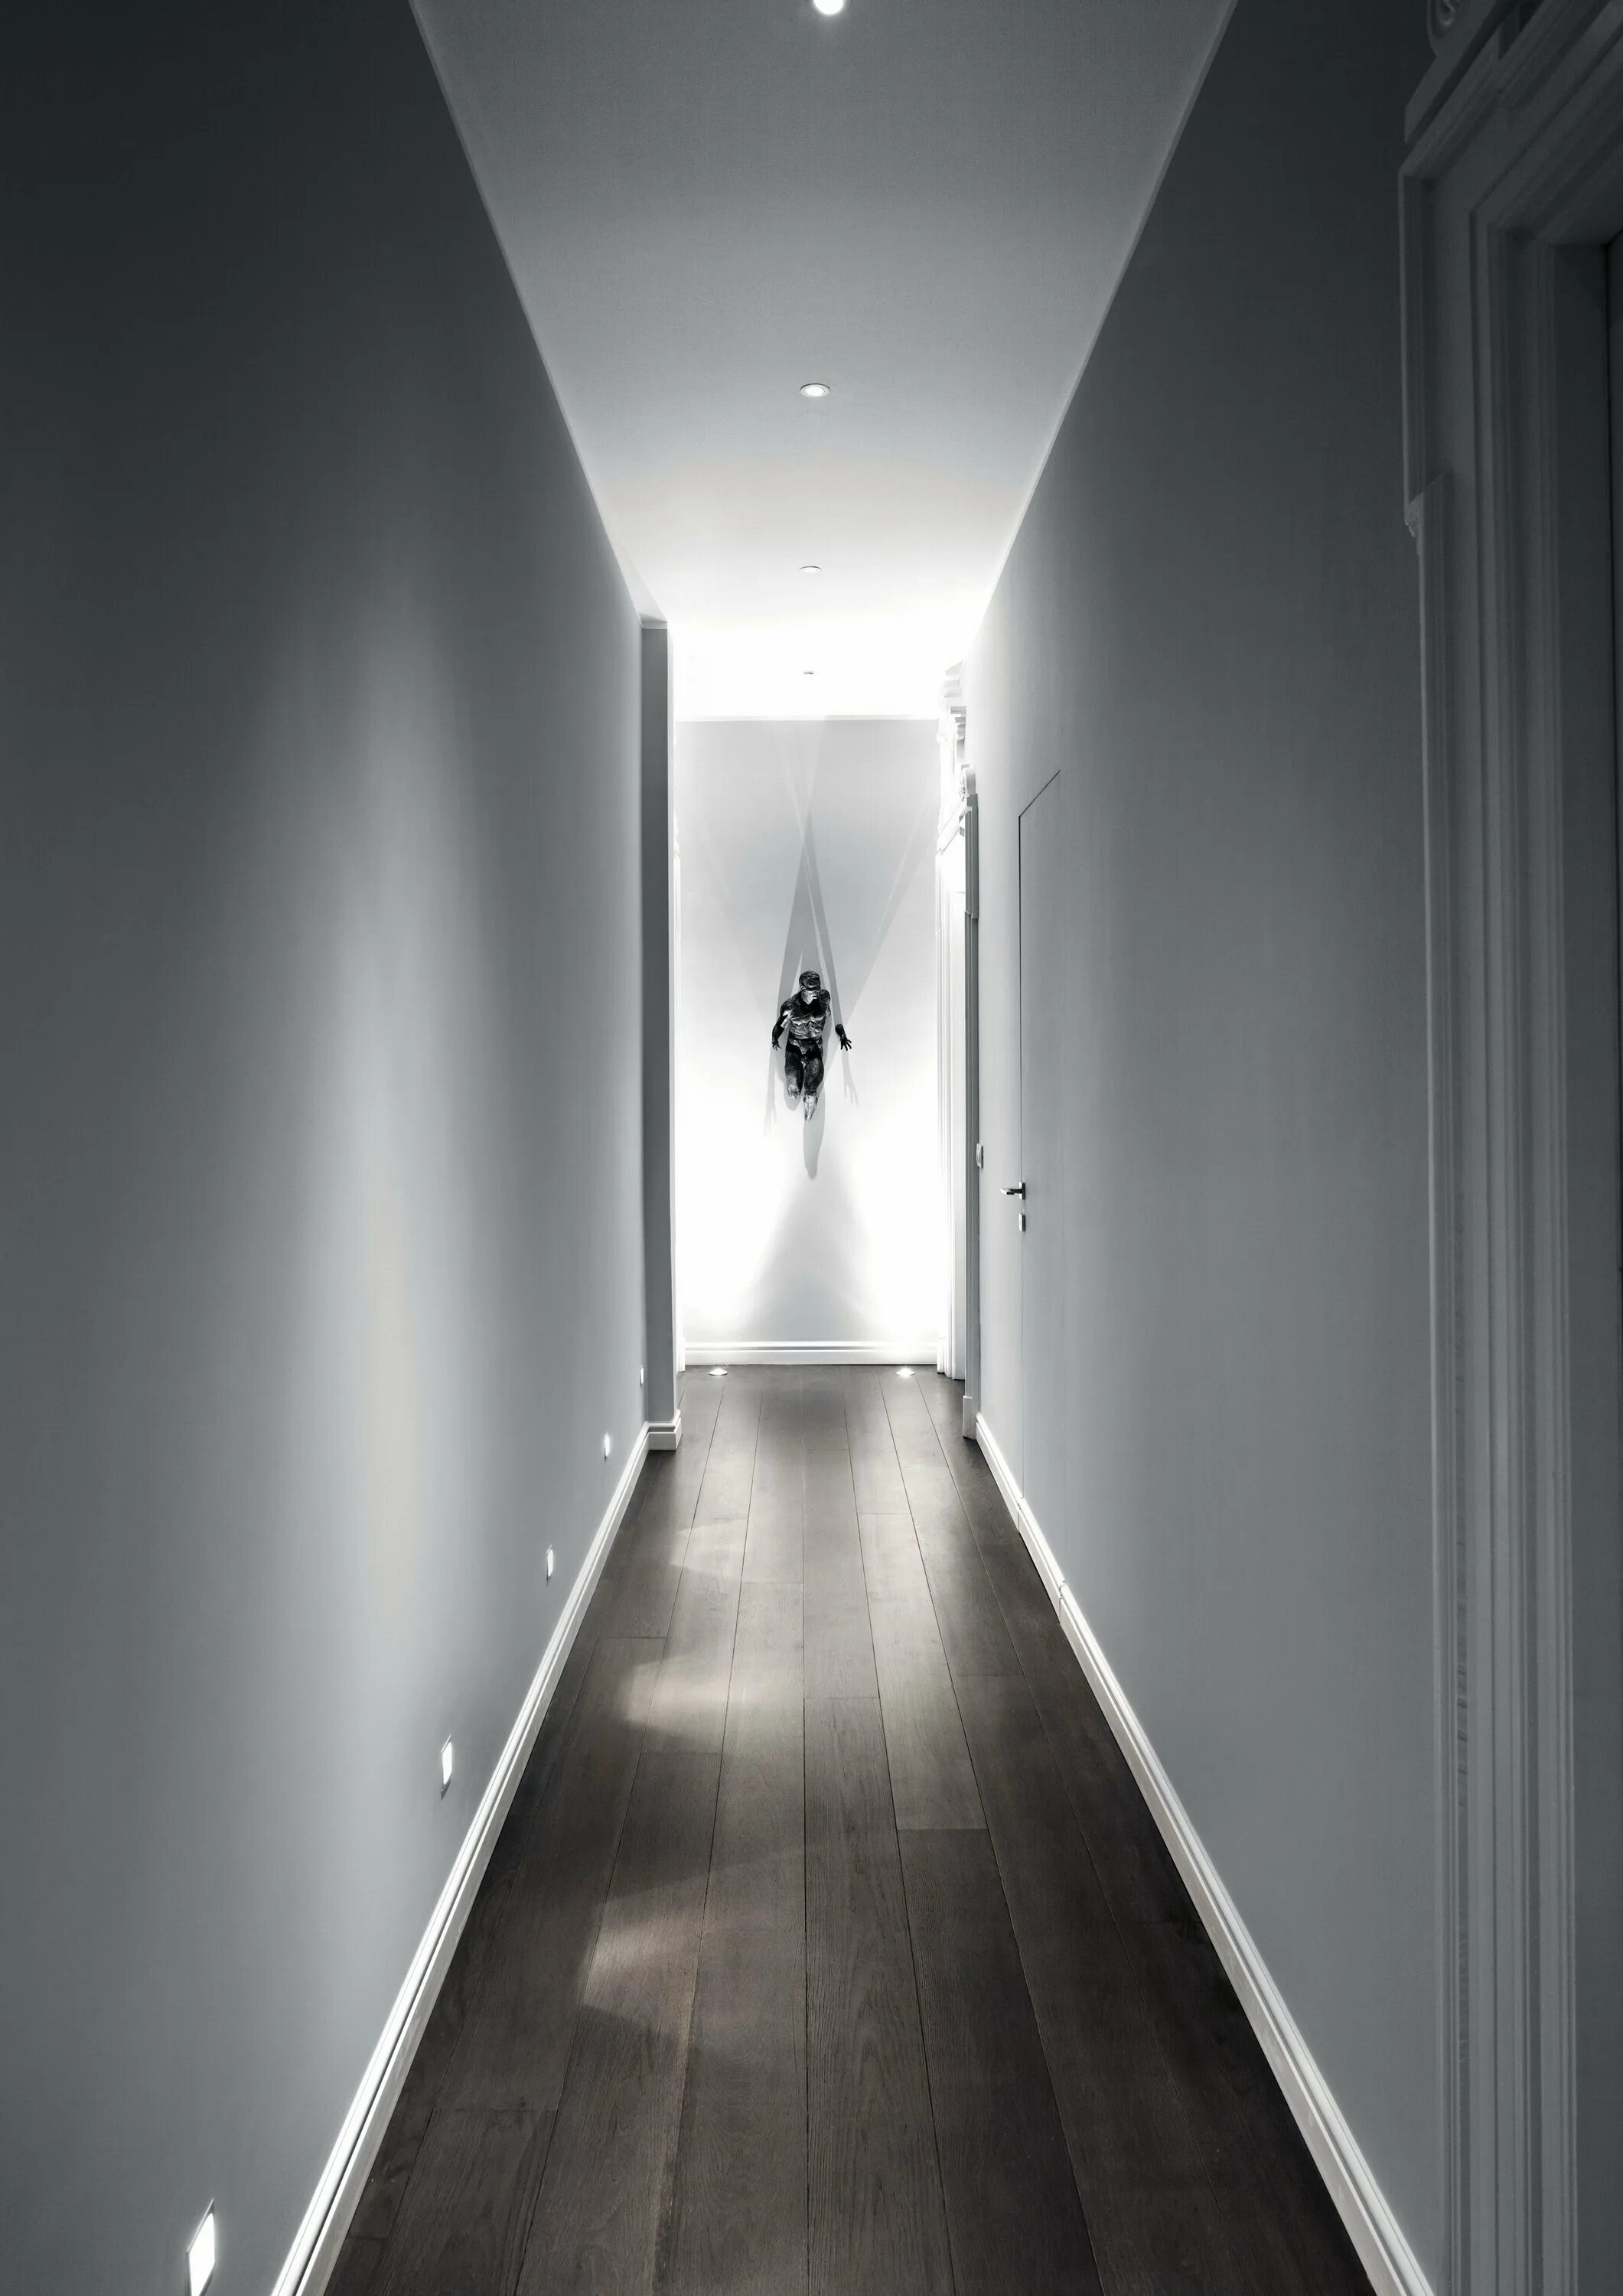 Освещение снизу. Освещение в коридоре. Подсветка в коридоре. Светильники в коридор. Ночное освещение в коридоре.